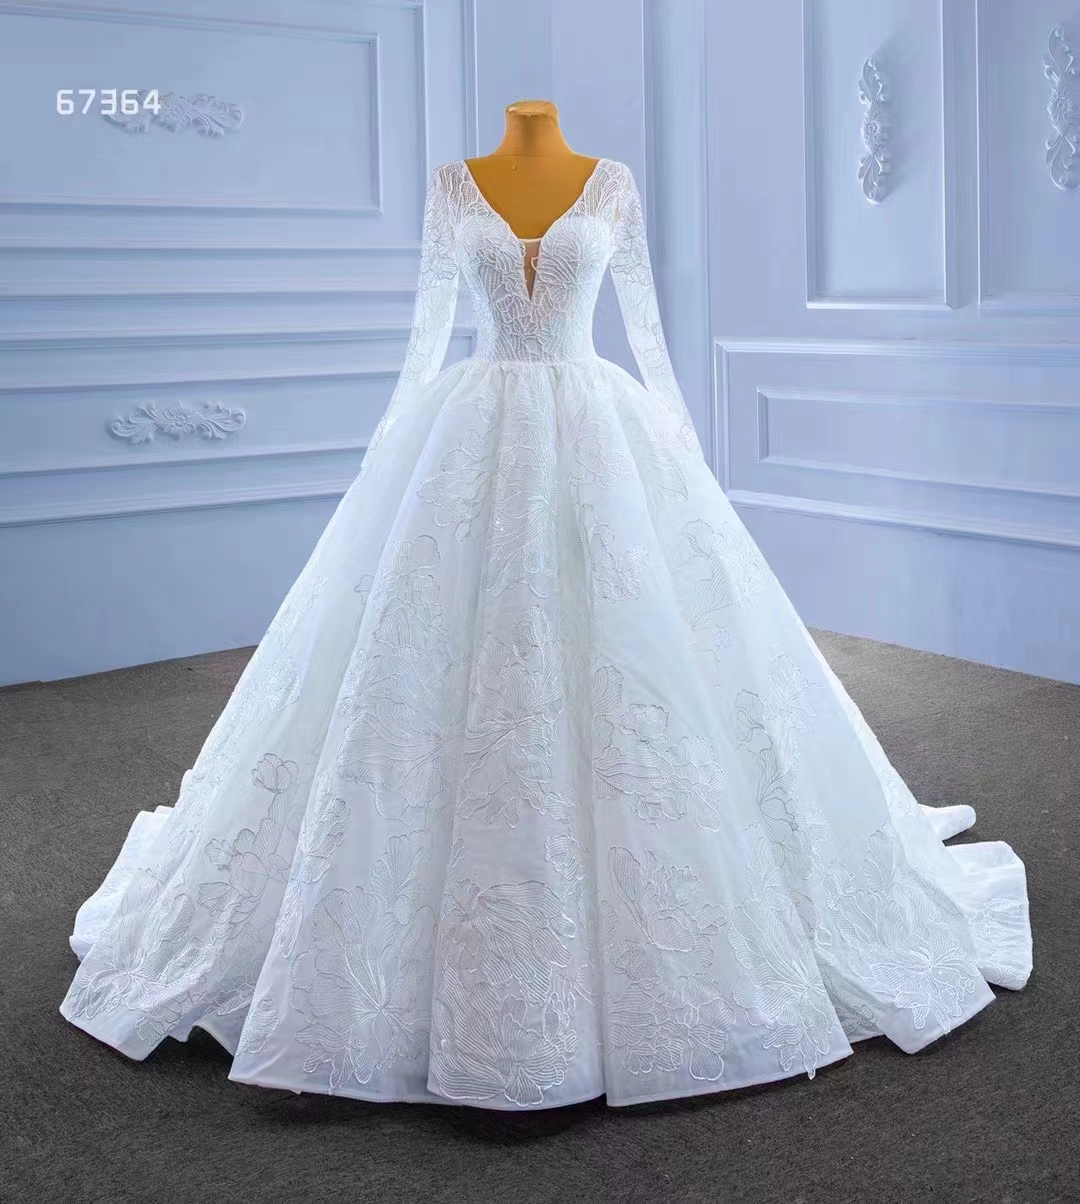 Vestido de bola de peru de tule branca de manga comprida vestido de noiva elegante vestido de noiva sm67364